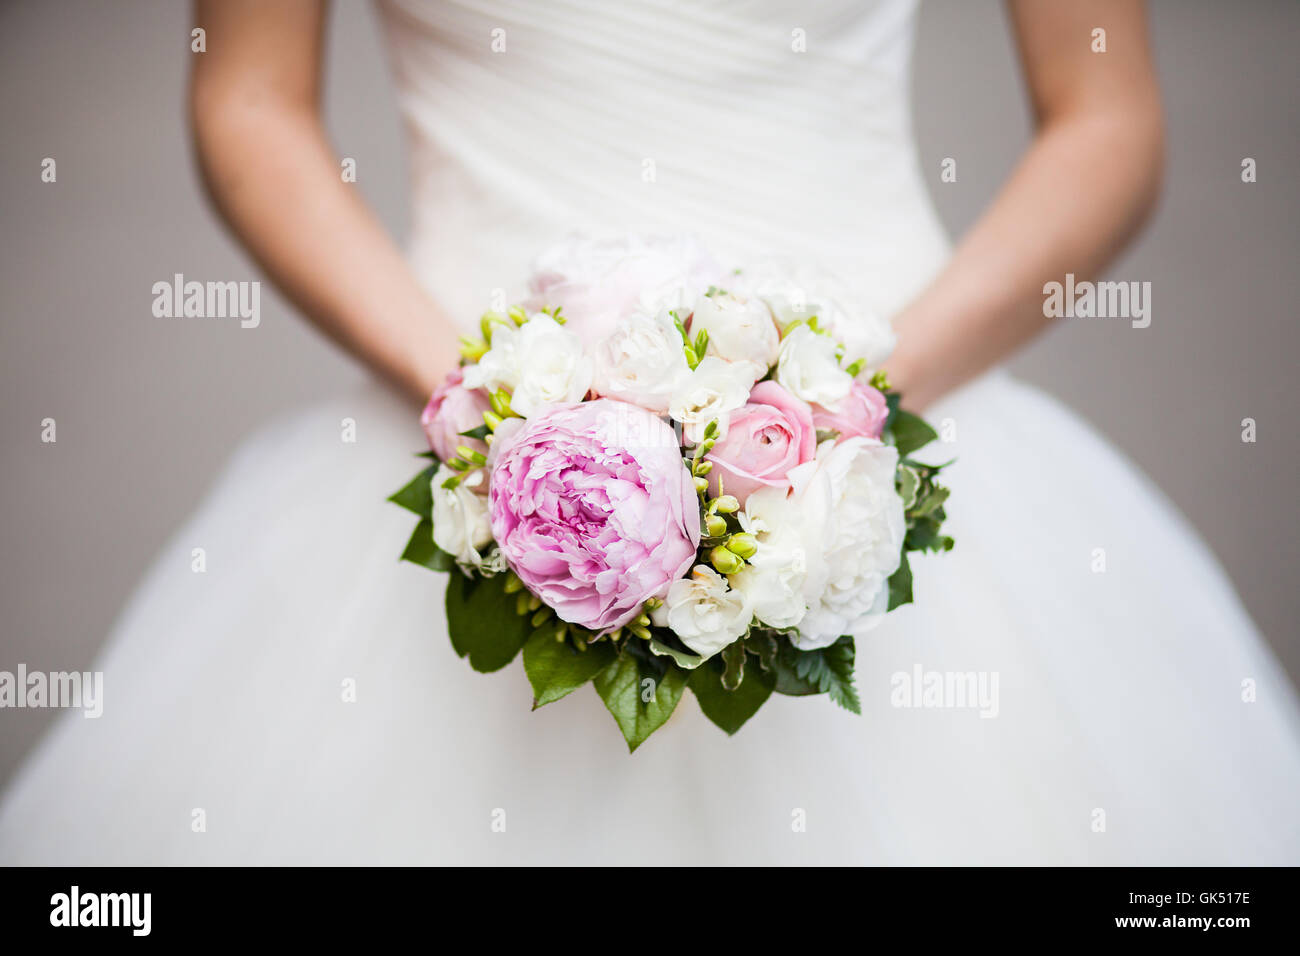 Magnifique pivoine rose bouquet de mariage dans les mains de la mariée, gros plan Banque D'Images